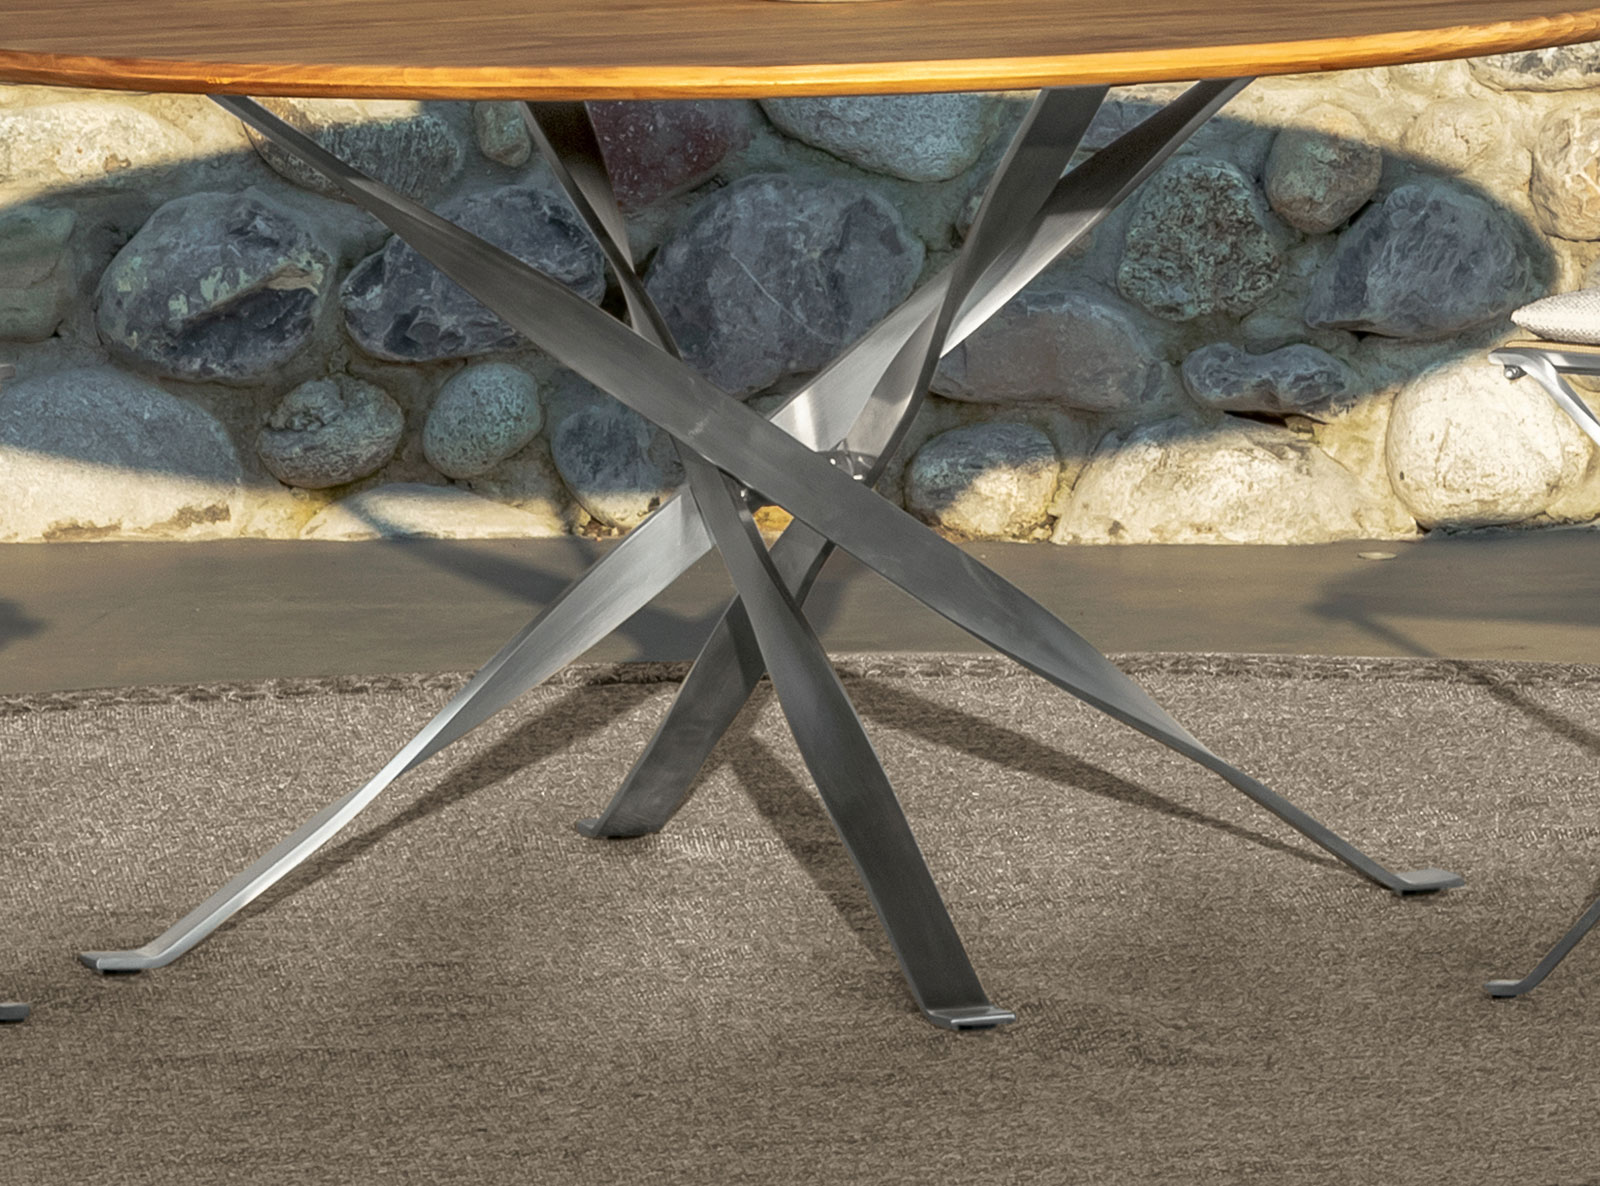 Table ronde de jardin en bois et acier. Vente en ligne de tables design et meubles d'extérieur haut de gamme avec livraison gratuite.